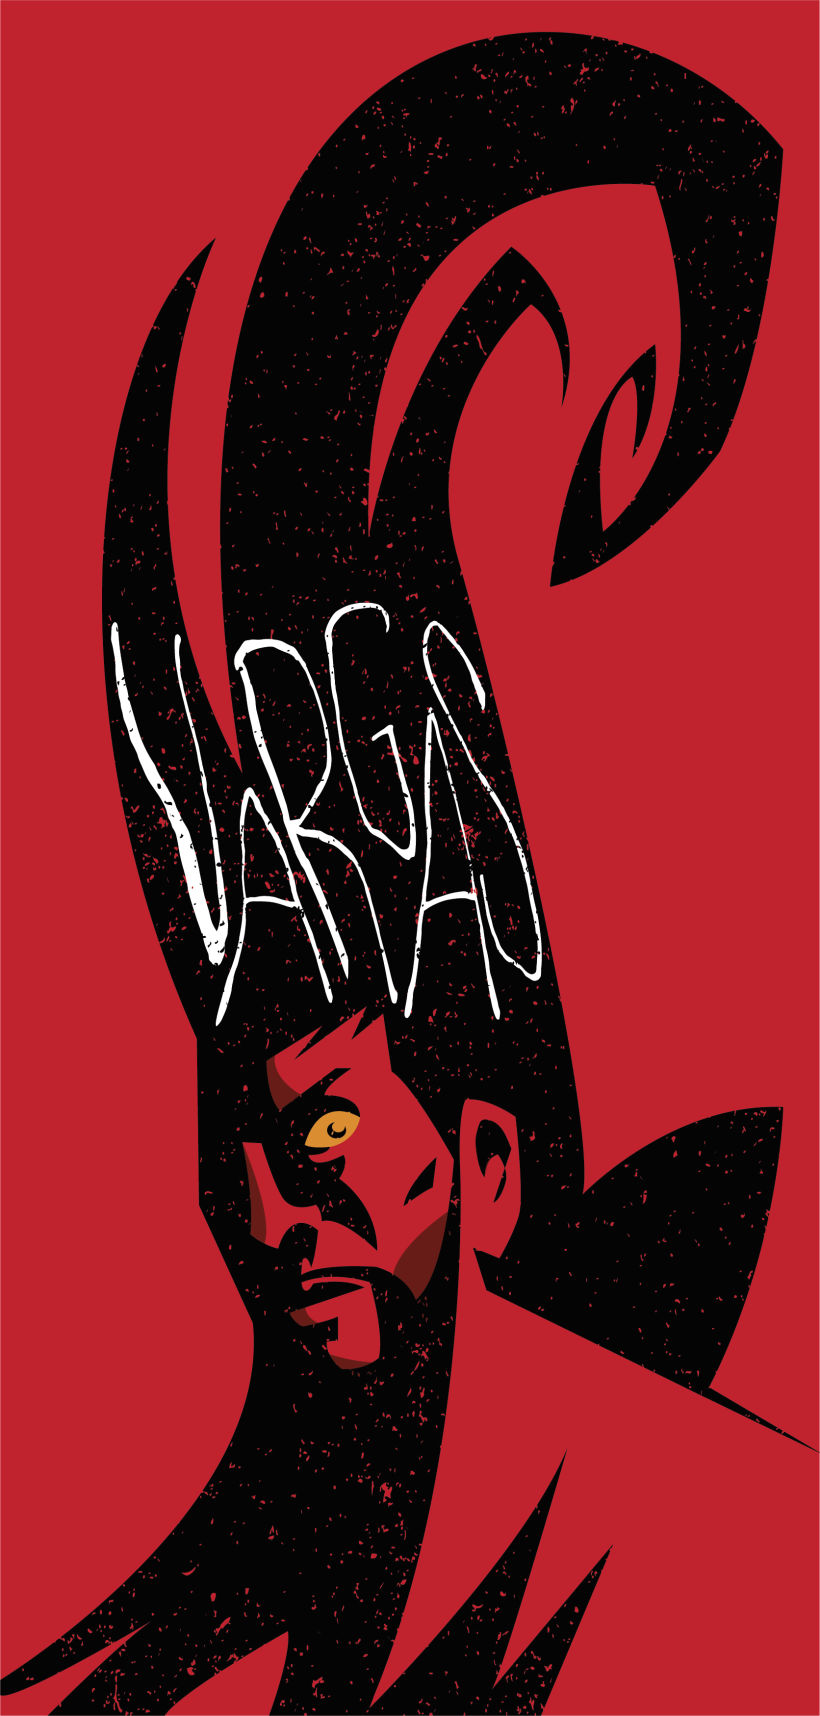 Vargas - Poster 0